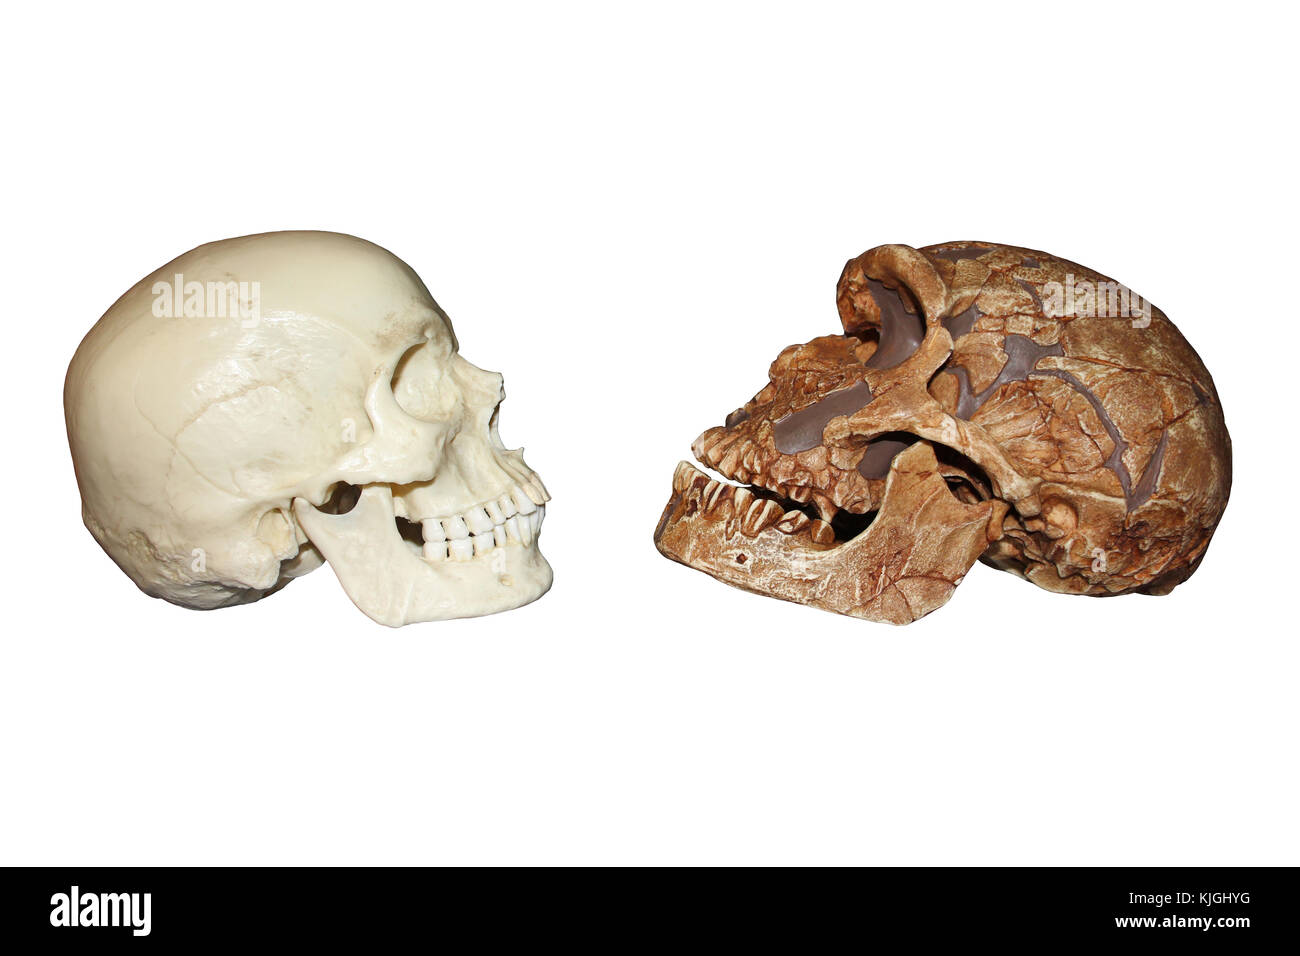 Vue de côté de l'Homo sapiens vs La Ferrassie1 Homo neanderthalensis crâne Banque D'Images